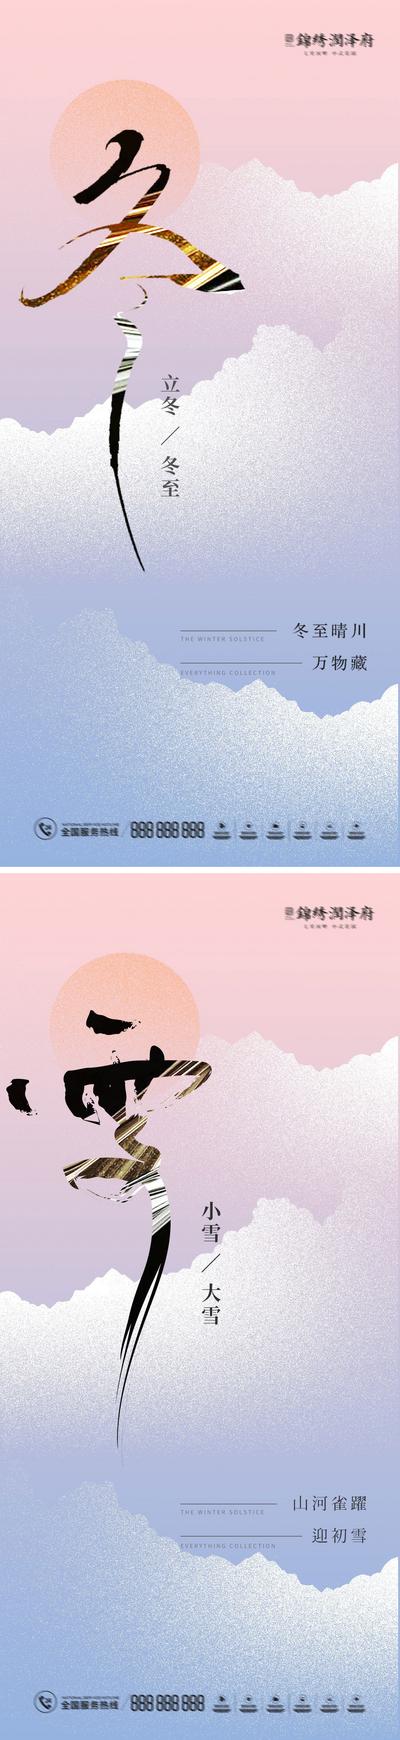 南门网 海报 地产 二十四节气 小雪 大雪 立冬 冬至 雪景 意境 插画